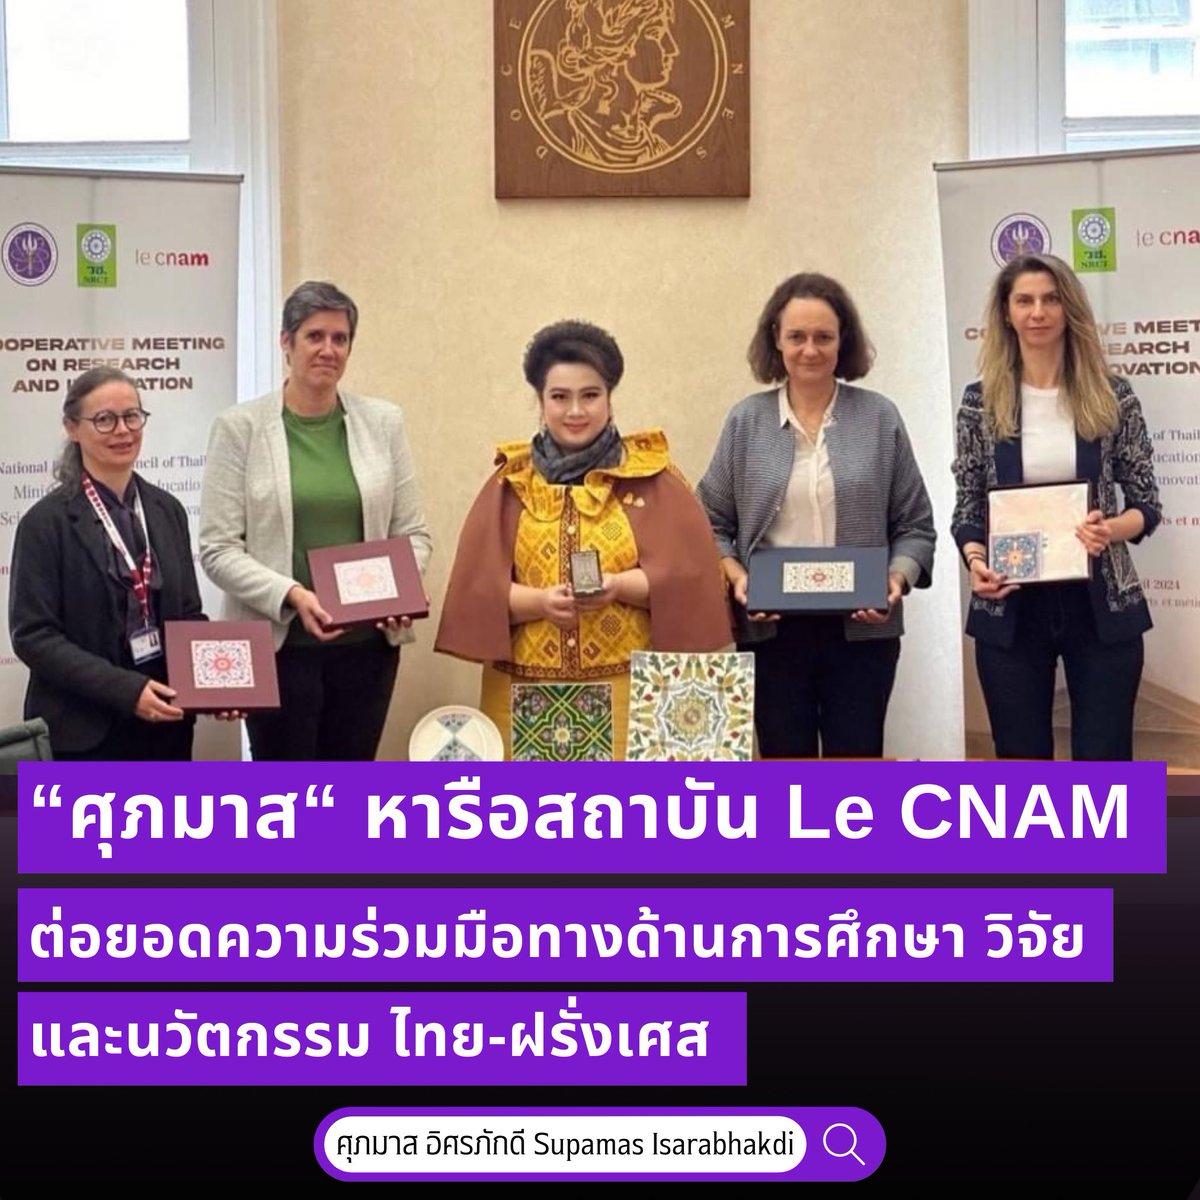 “ศุภมาส“ หารือความร่วมมือสถาบัน Le CNAM ต่อยอดความร่วมมือทางด้านการศึกษา วิจัยและนวัตกรรมของไทย พร้อมพบปะนักเรียน นักศึกษา ที่กำลังศึกษาอยู่ ณ สาธารณรัฐฝรั่งเศส

📌 shorturl.asia/j4Hxo

#กระทรวงการอุดมศึกษาวิทยาศาสตร์วิจัยและนวัตกรรม
#MHESI
#ศุภมาสอิศรภักดี
#ผึ้งศุภมาส